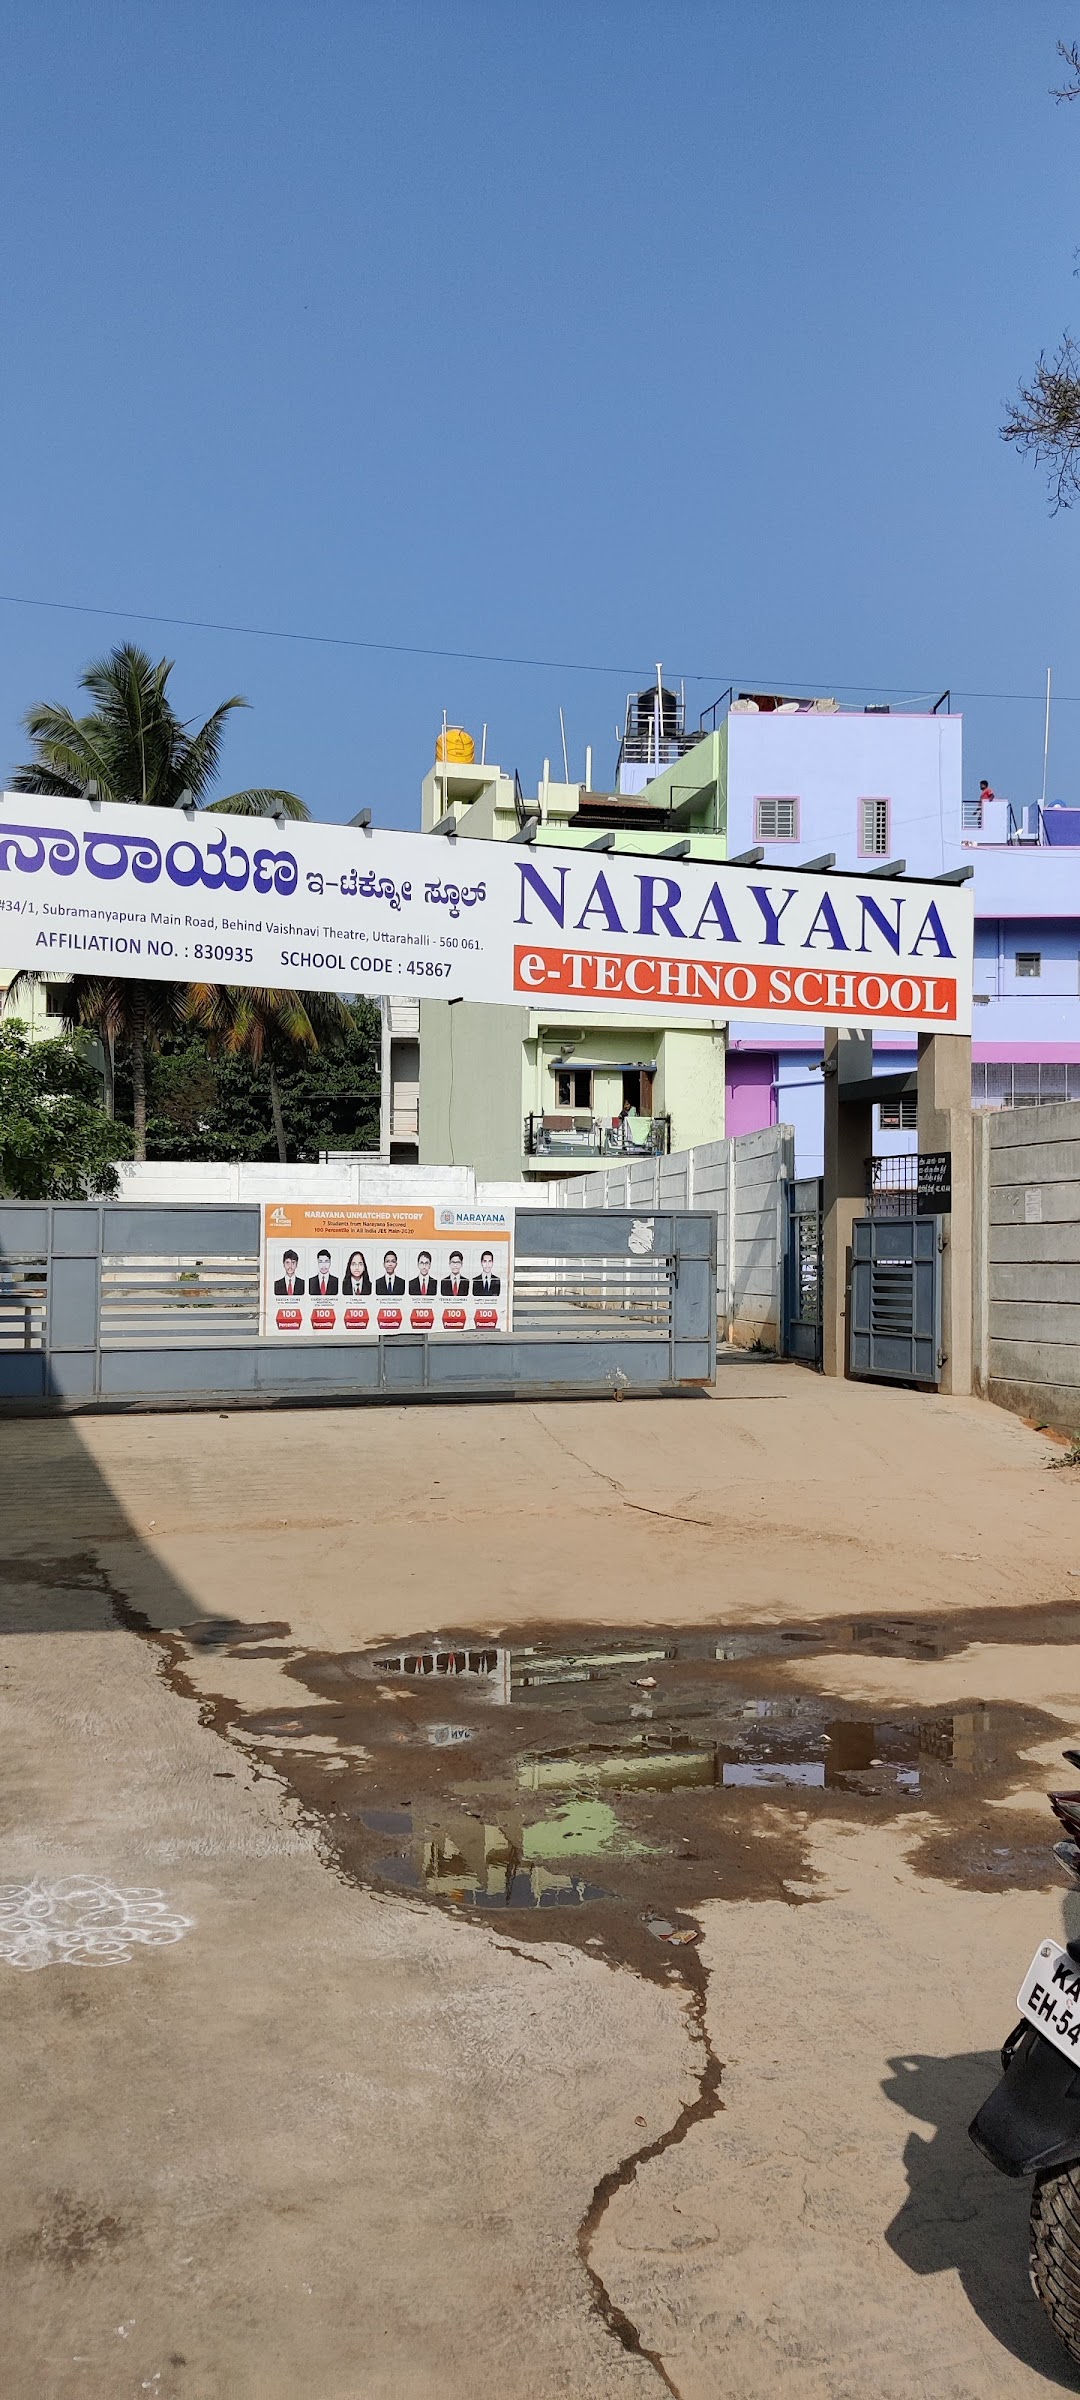 Narayana e-techno school